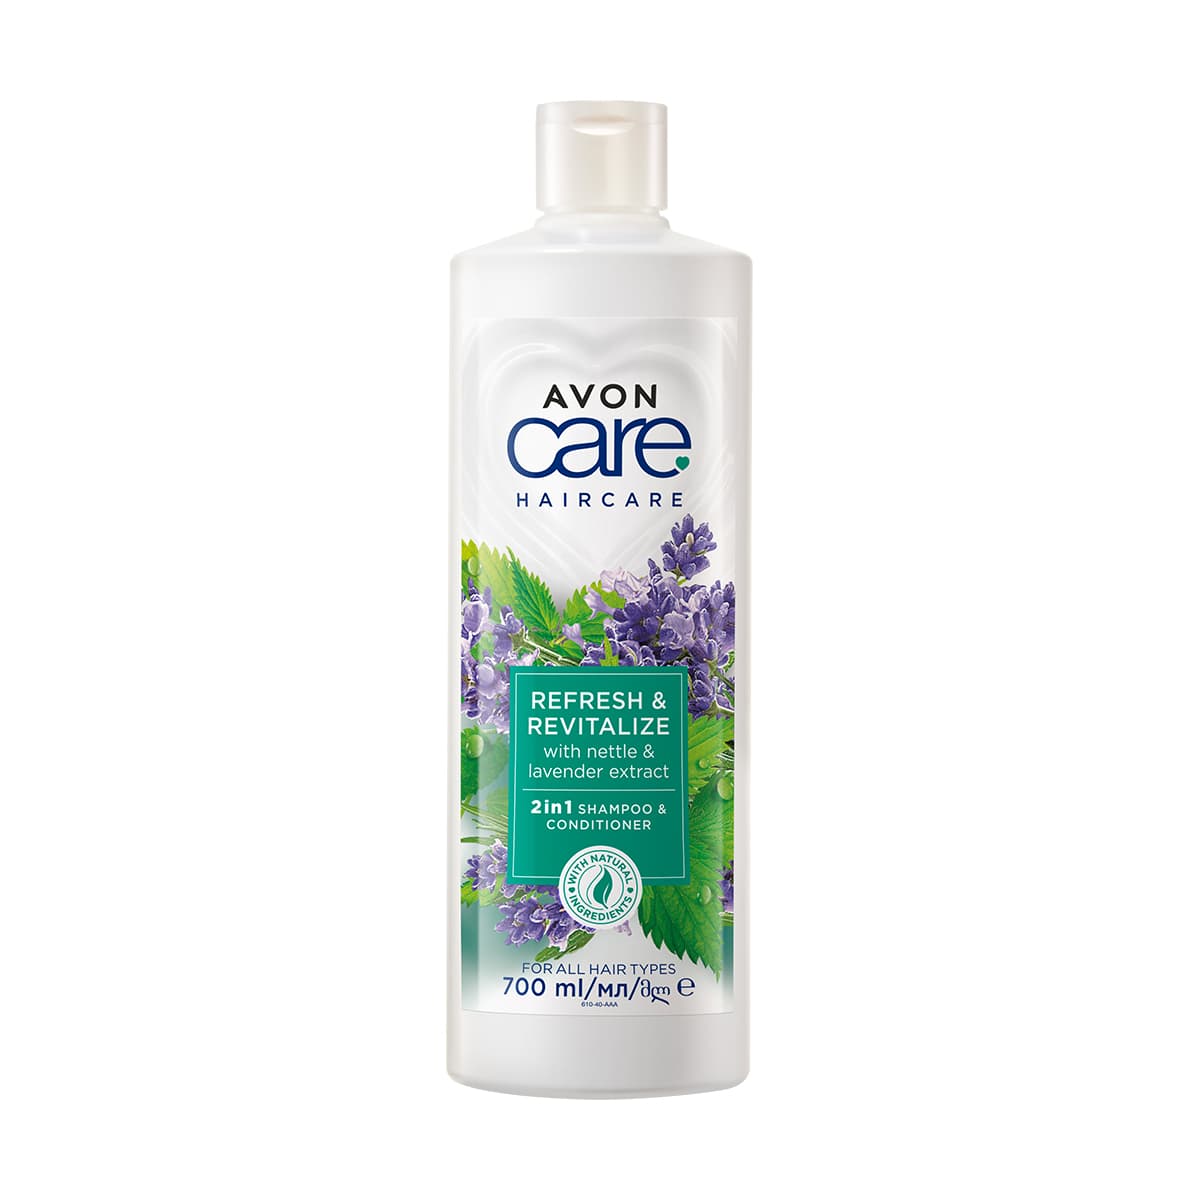 Avon Care Nettle & Lavender 2 in 1 Shampoo & Conditioner 700ml